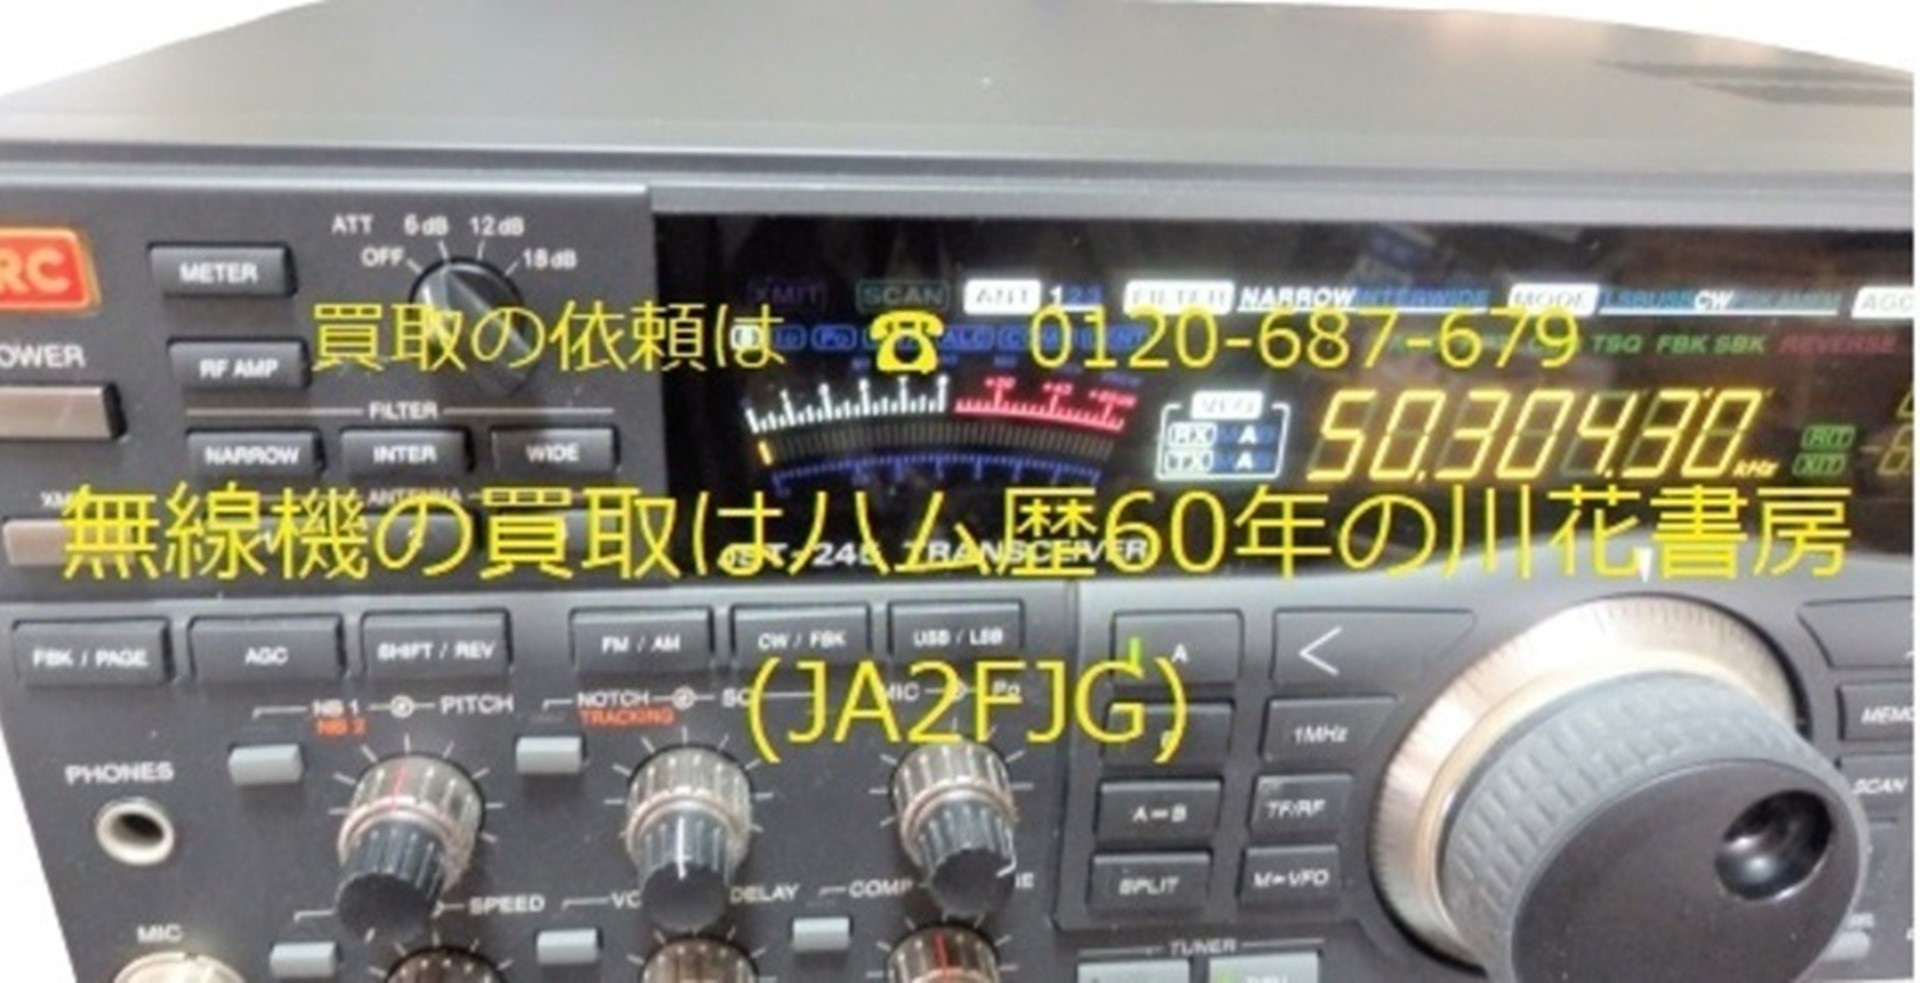 川花書房のアマチュア無線機類の販売ページ | 無線機の買取はハム歴58